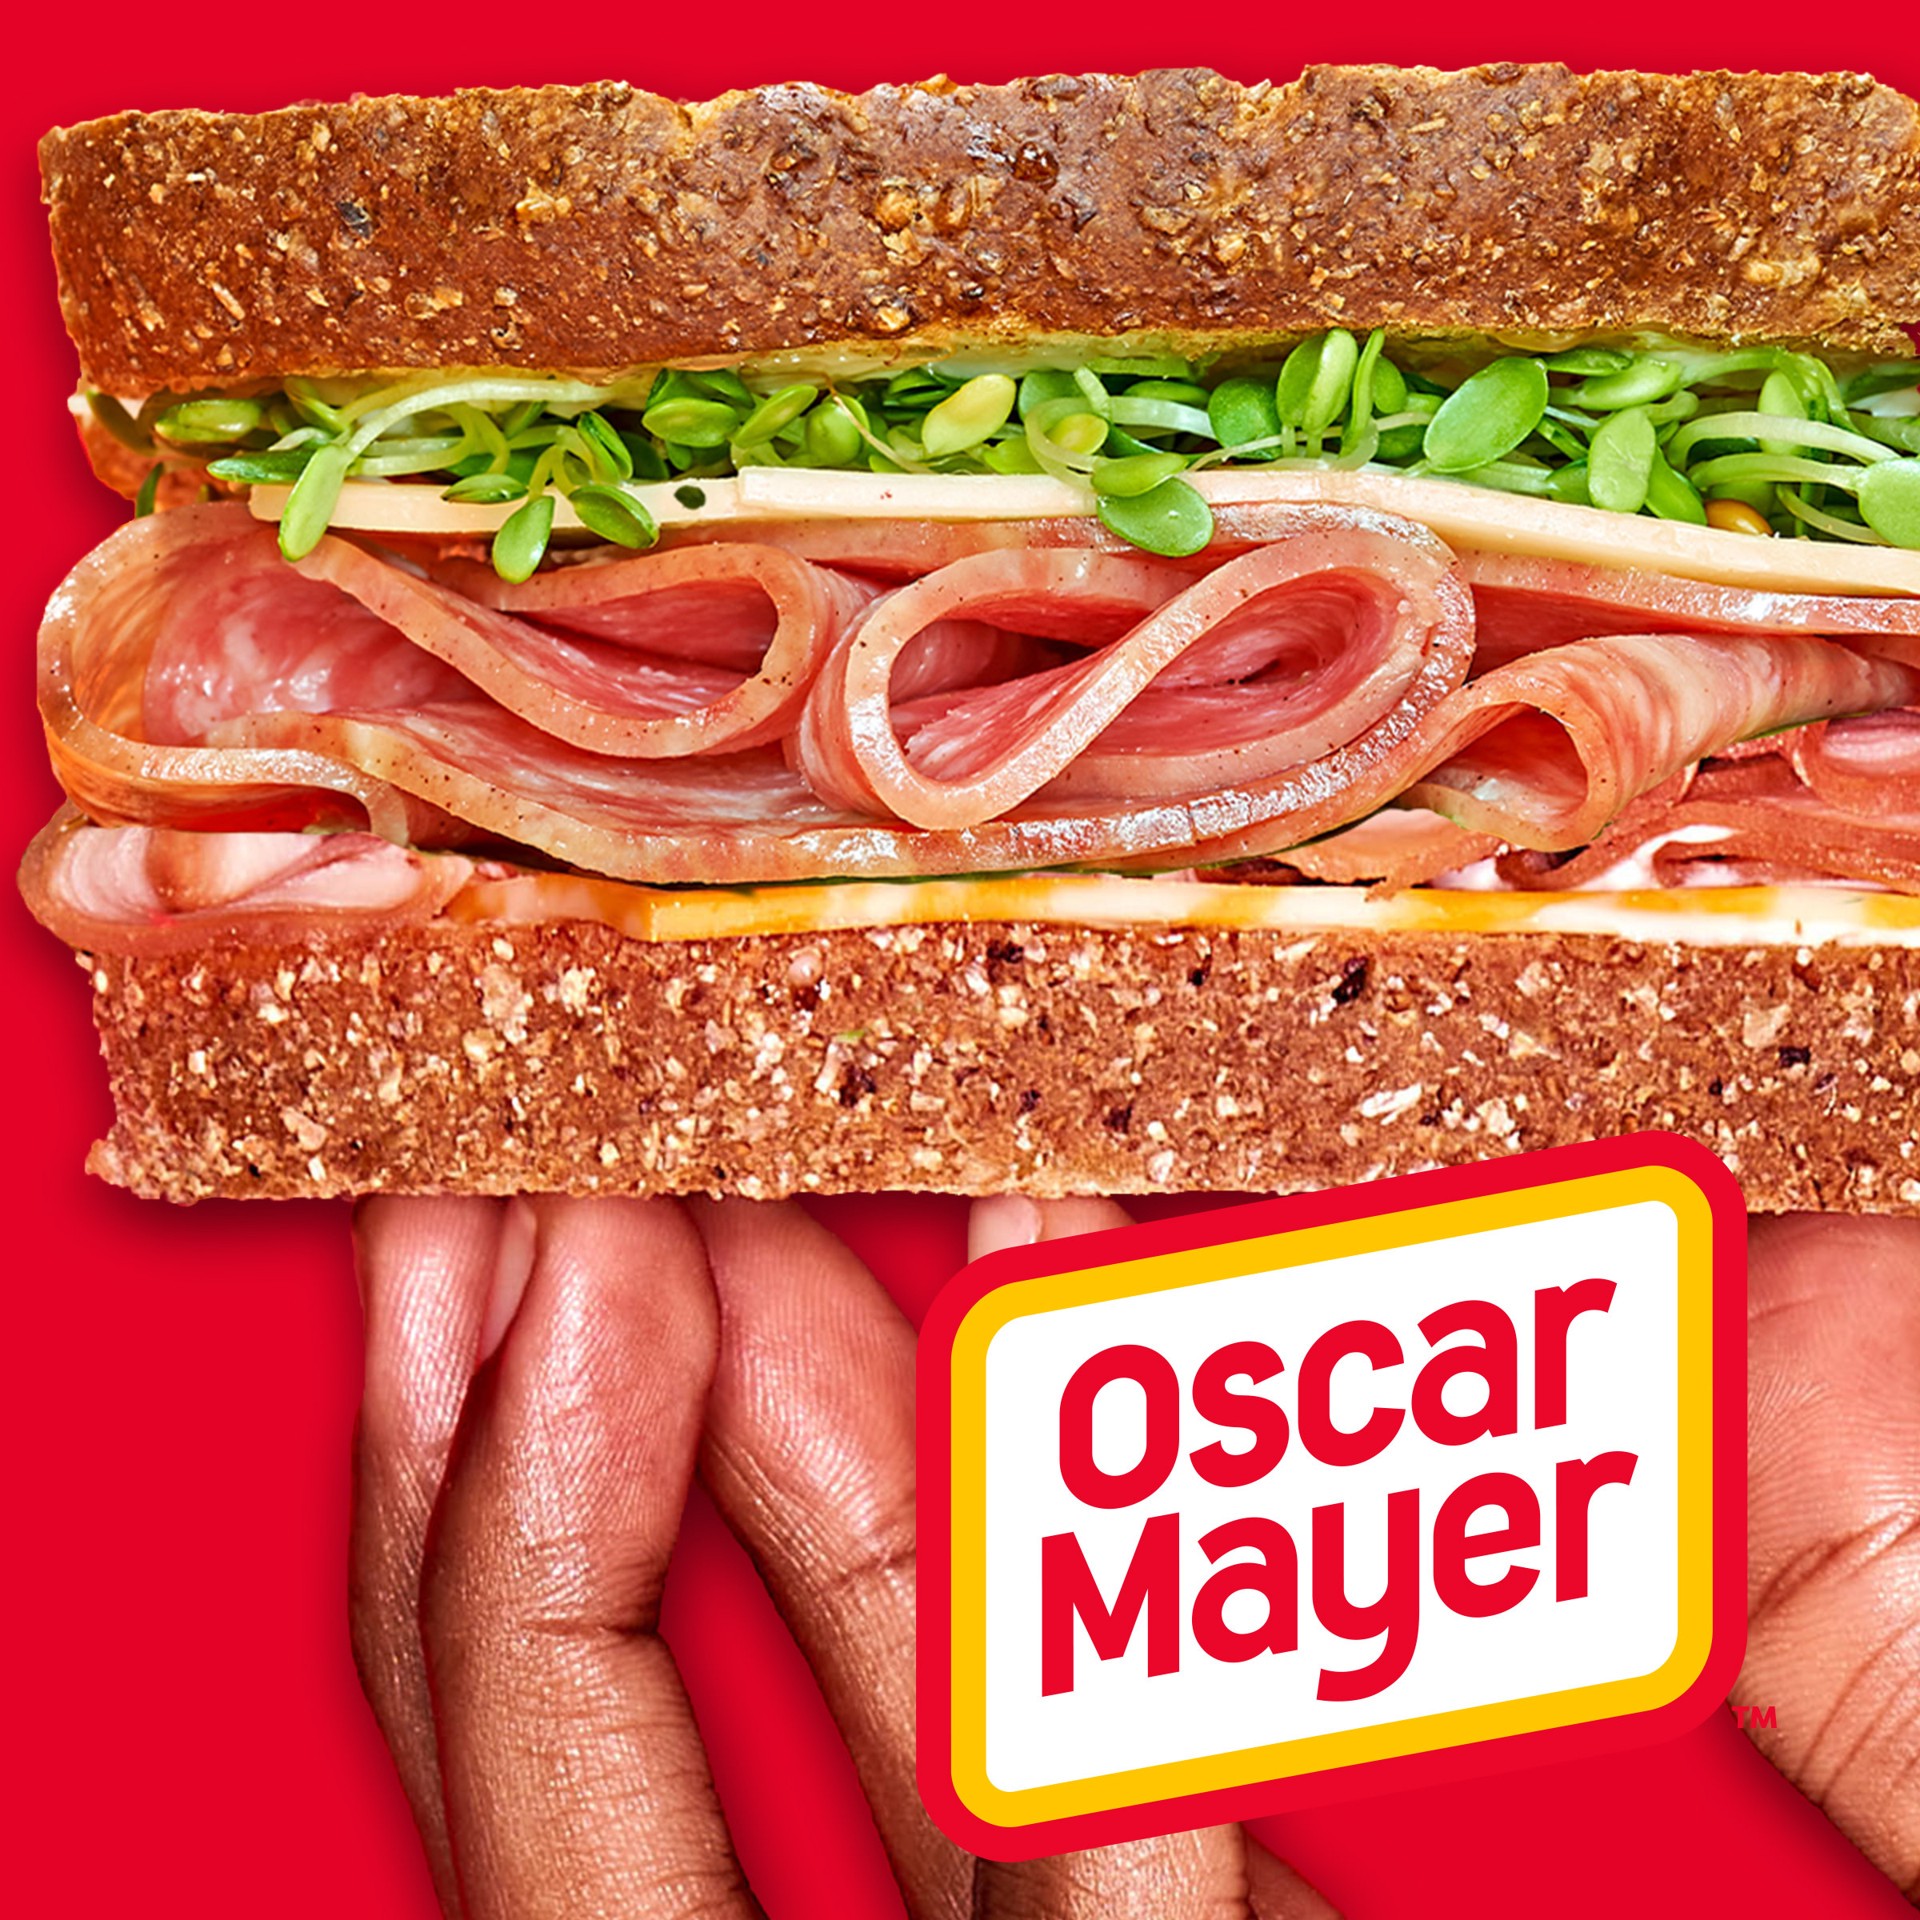 slide 3 of 5, Oscar Mayer Turkey Cotto Salami Sliced Lunch Meat, 16 oz. Pack, 16 oz